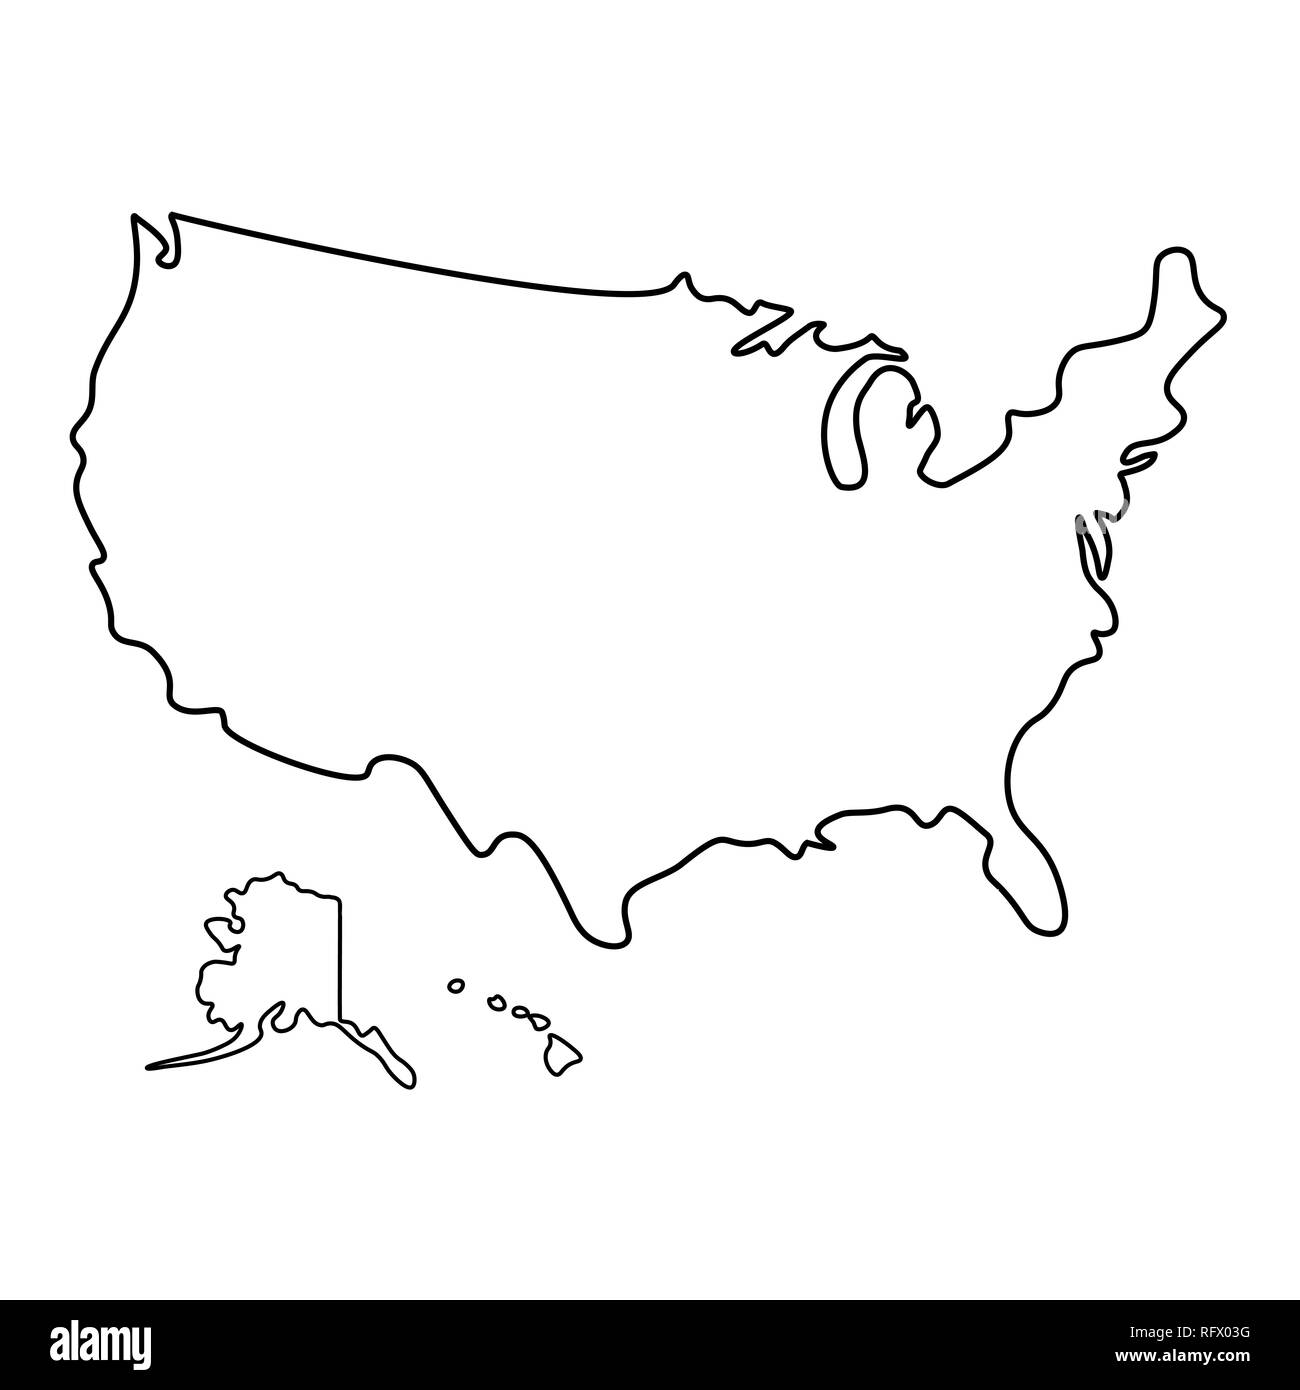 Map of united states Imágenes de stock en blanco y negro - Alamy